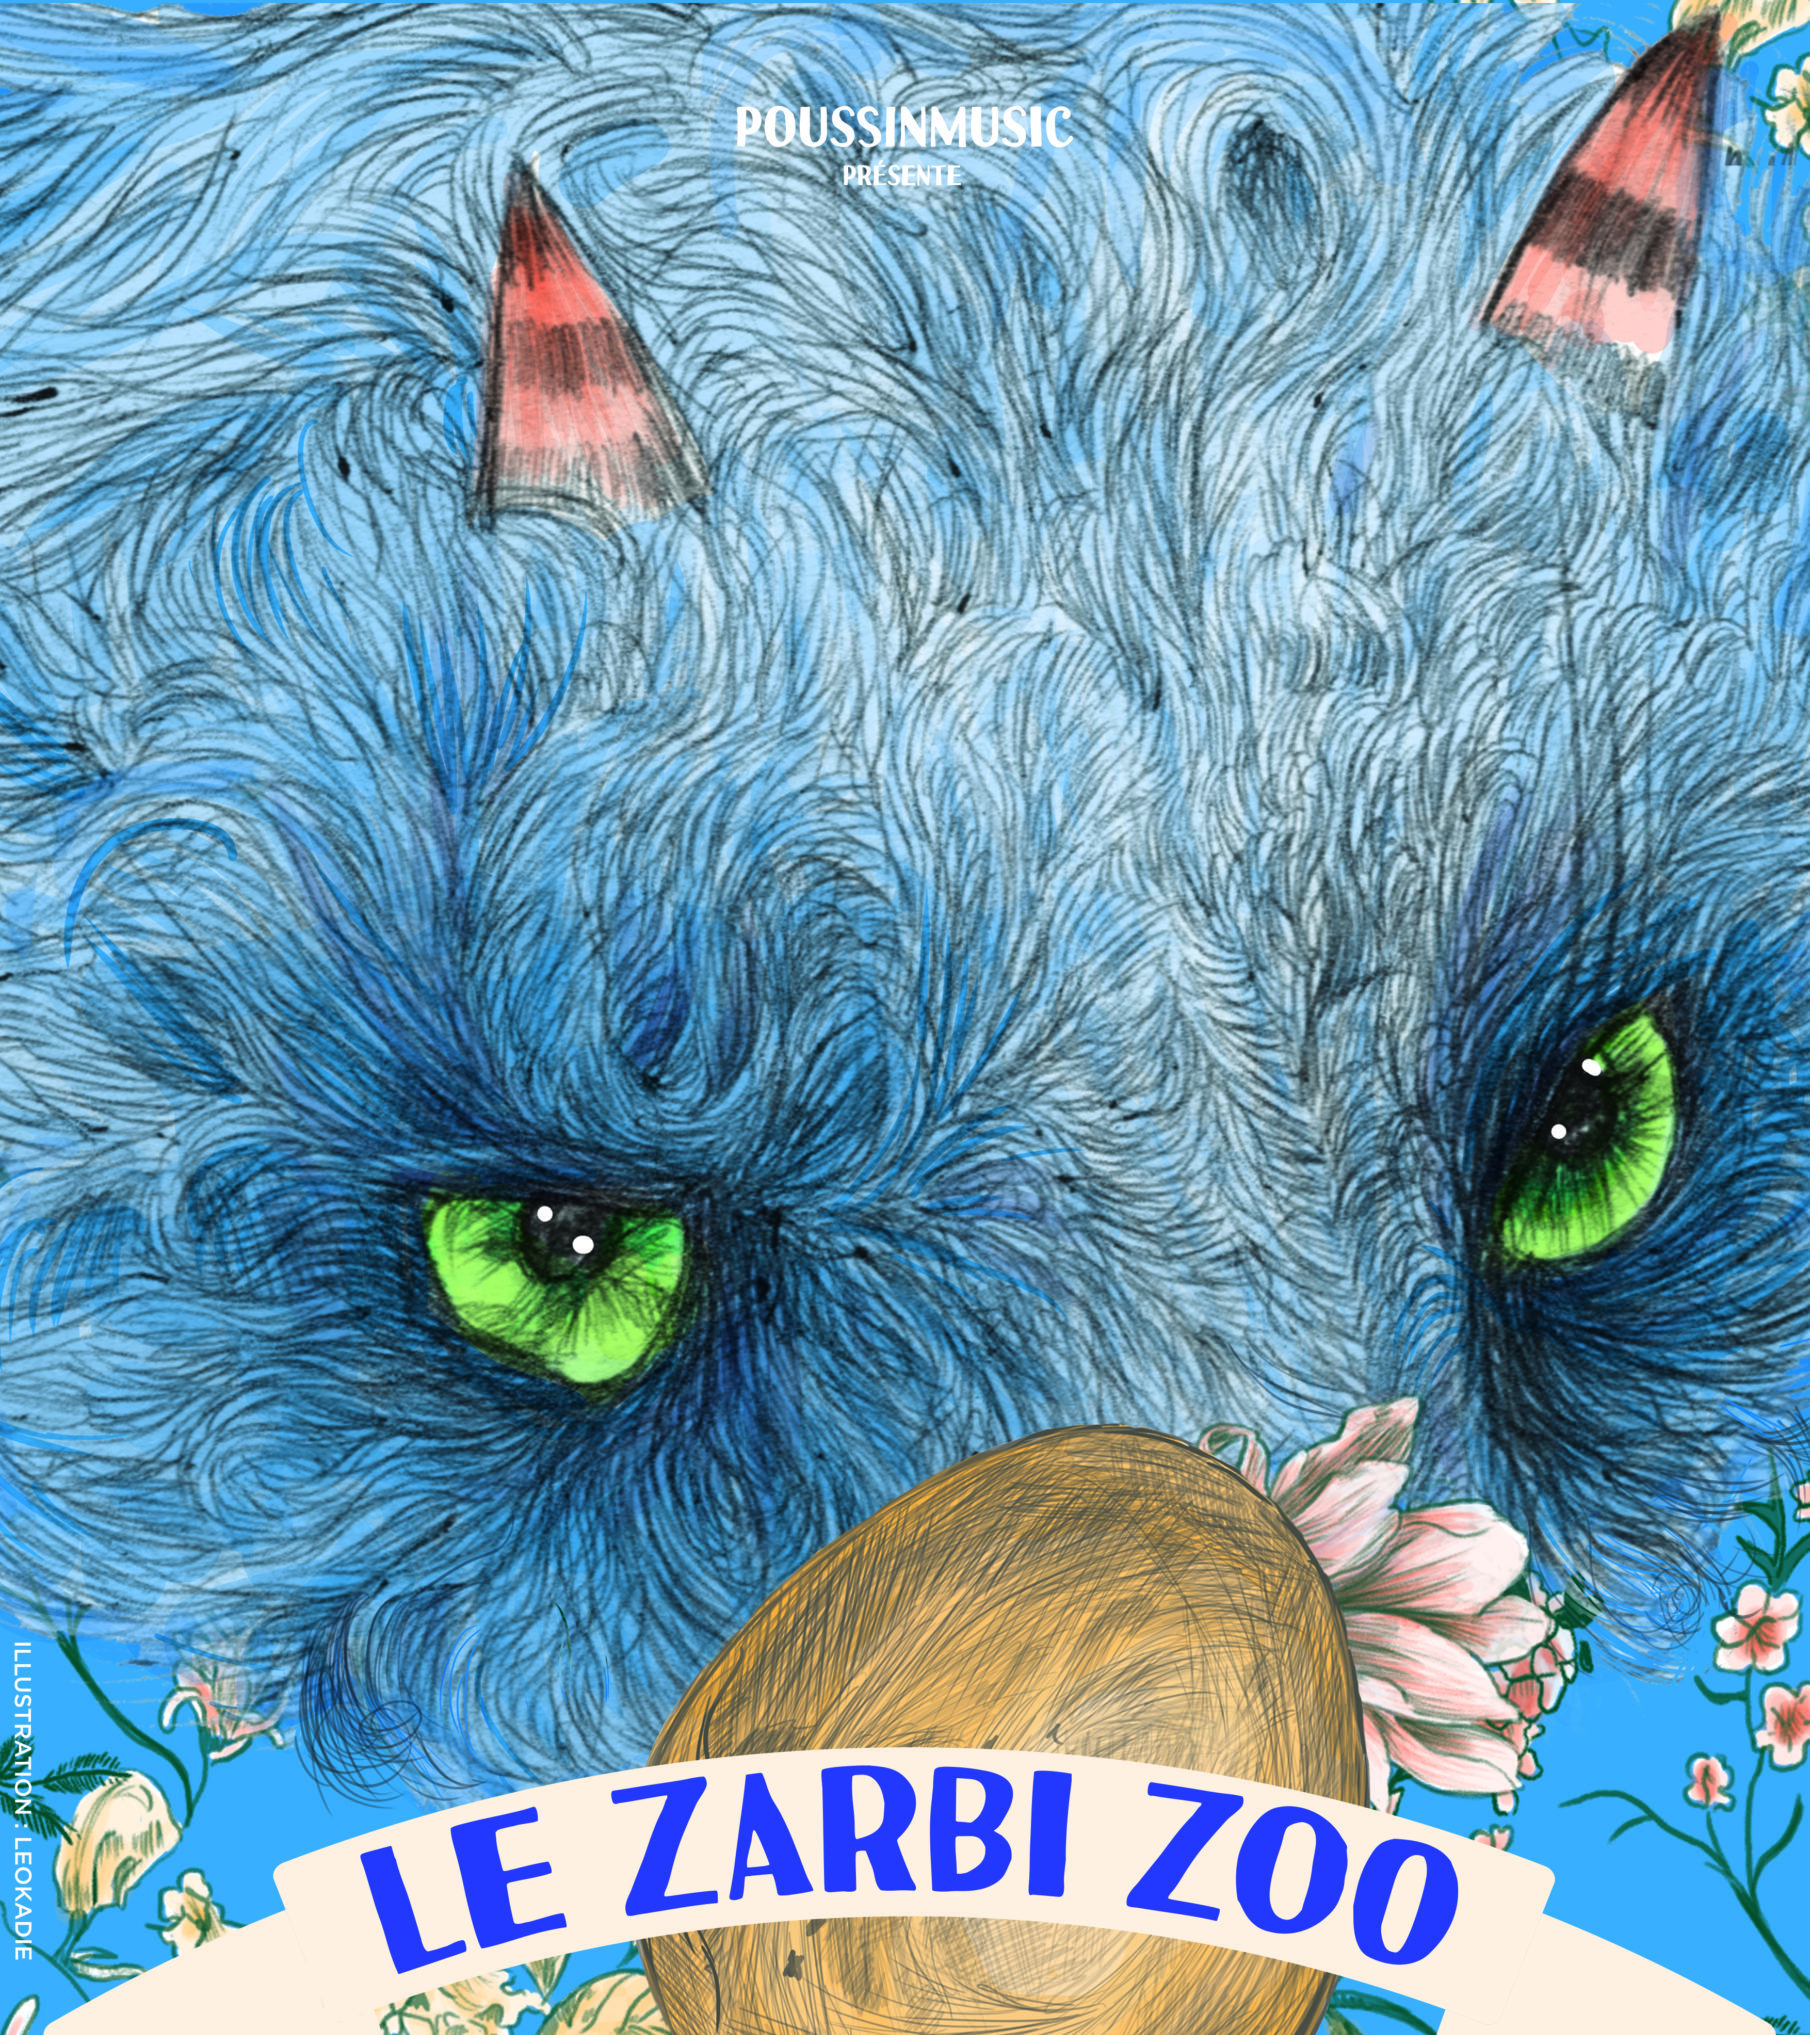 Le Zarbi Zoo